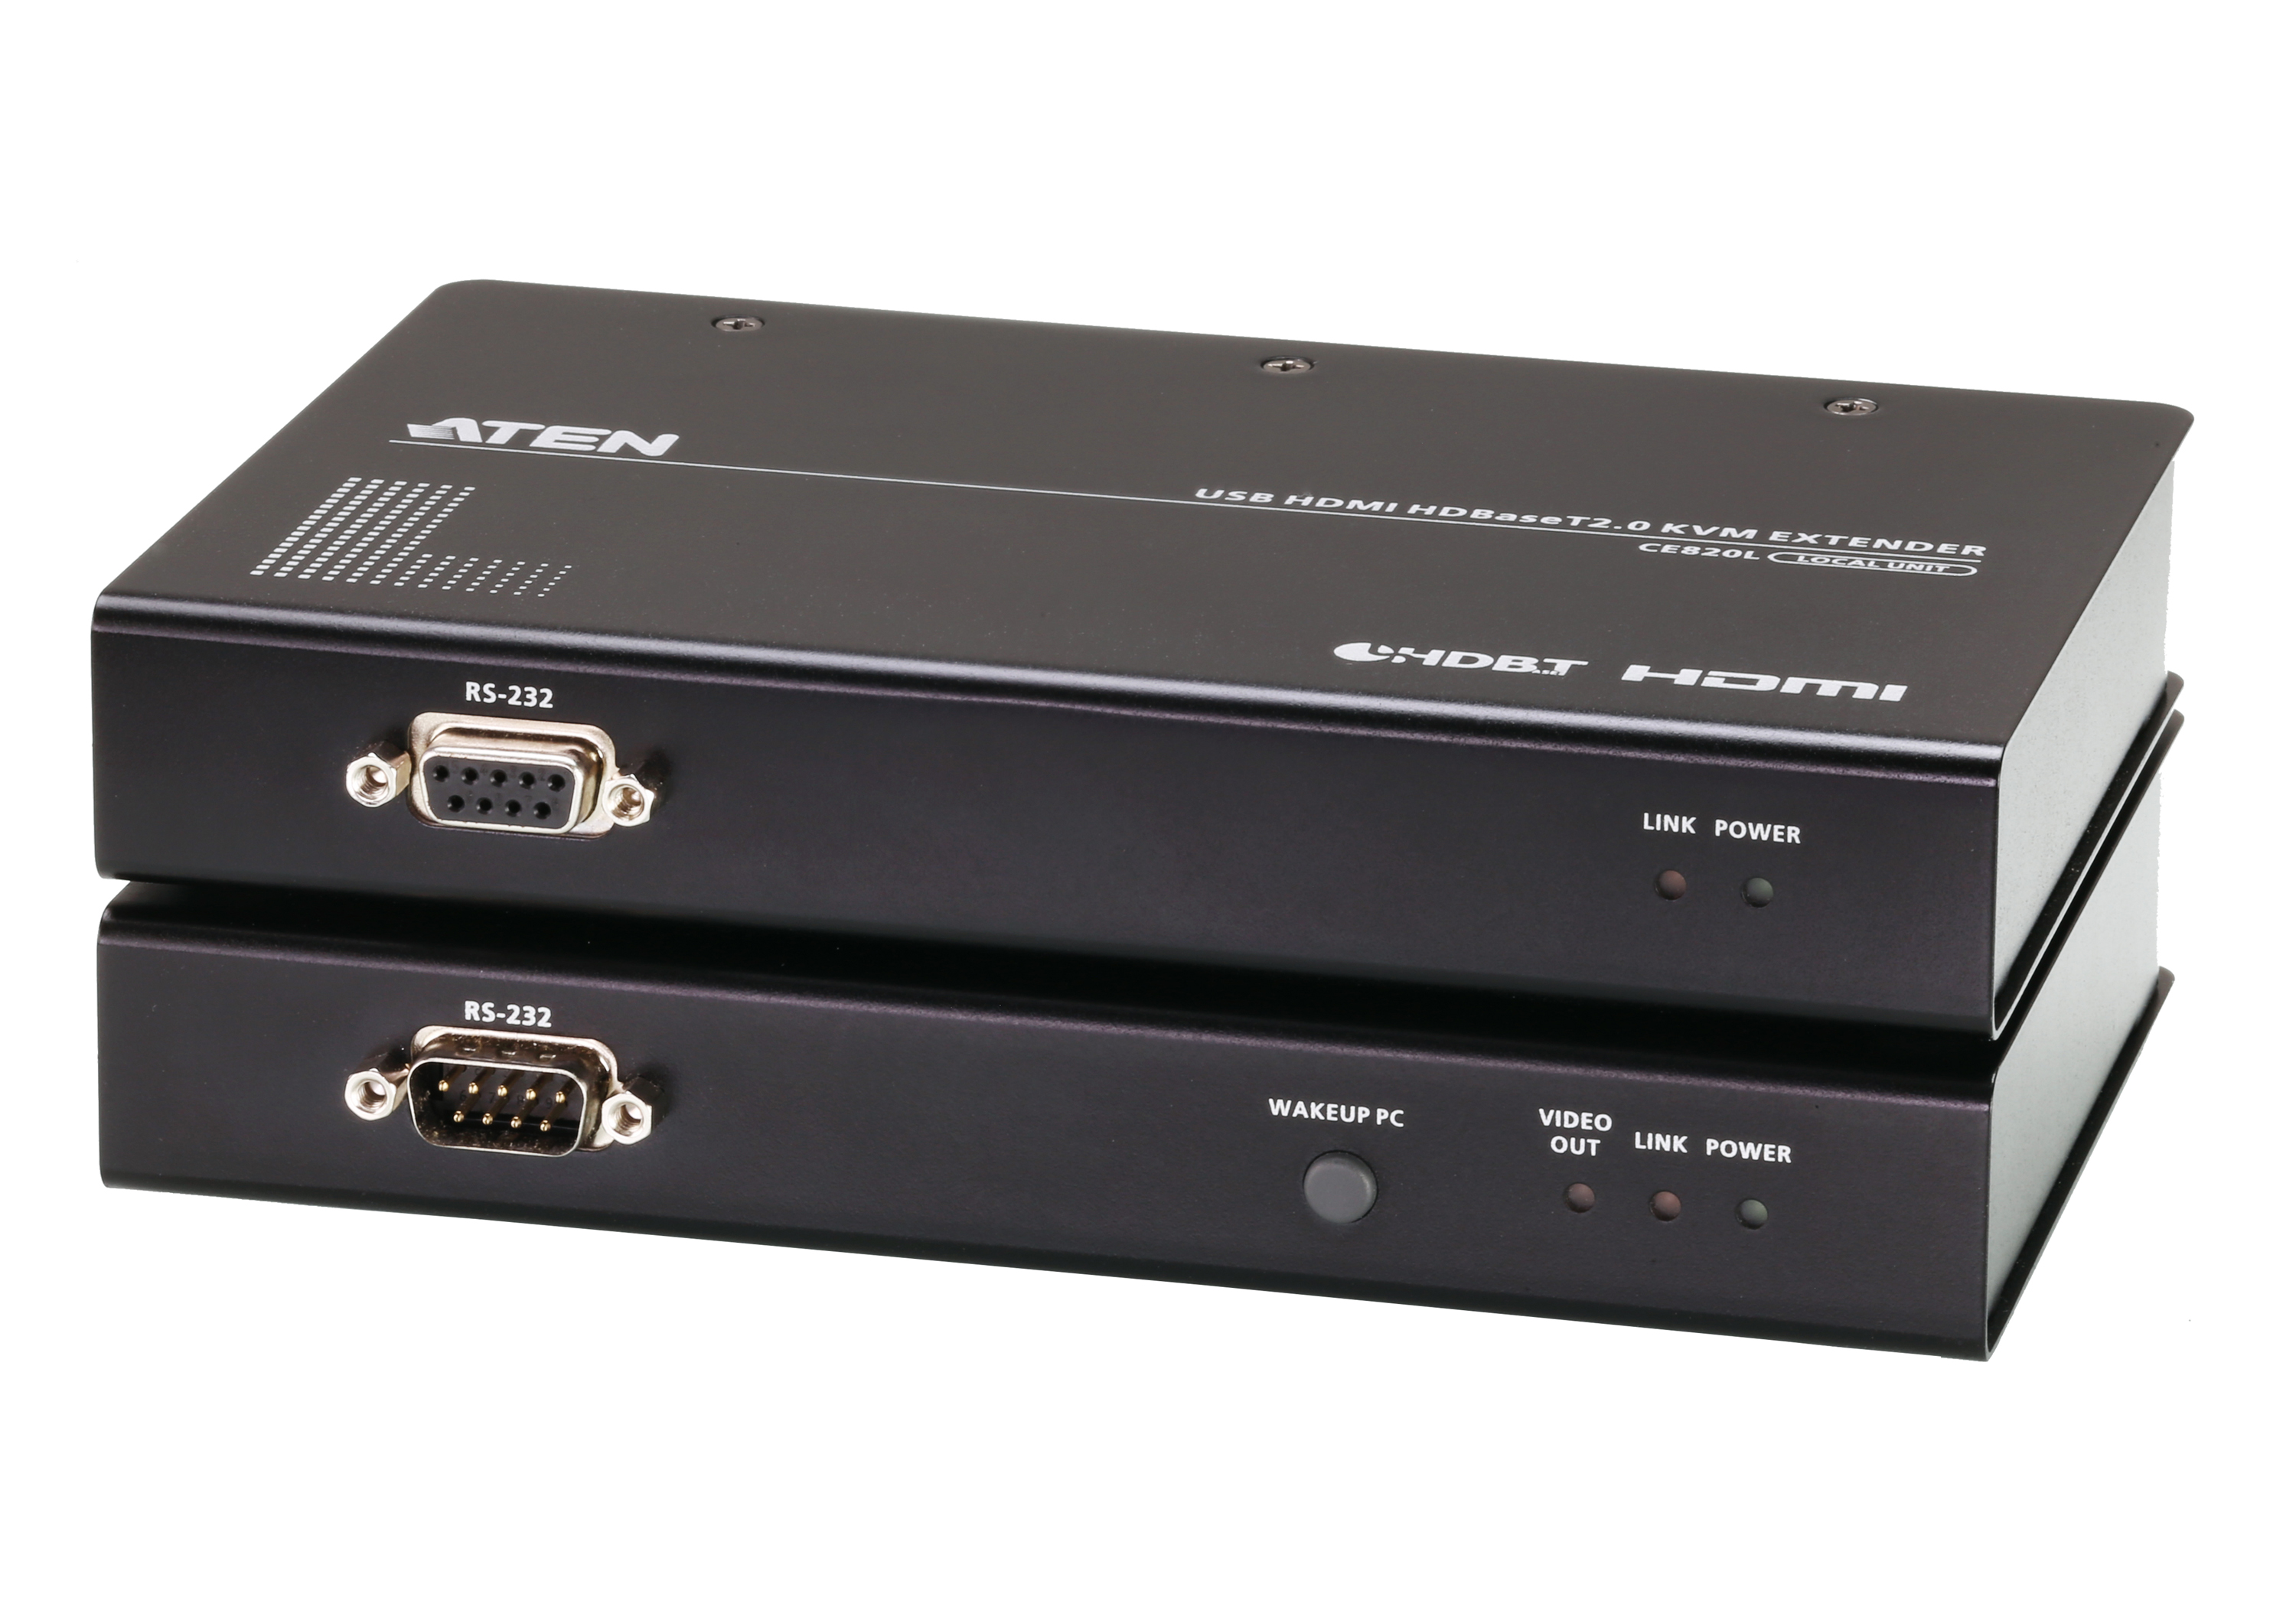 Удлинитель KVM (КВМ) ATEN CE820-AT-G, HDMI до 3840x2160, клавиатура USB, мышь USB, до 100м (CE820-AT-G) - фото 1